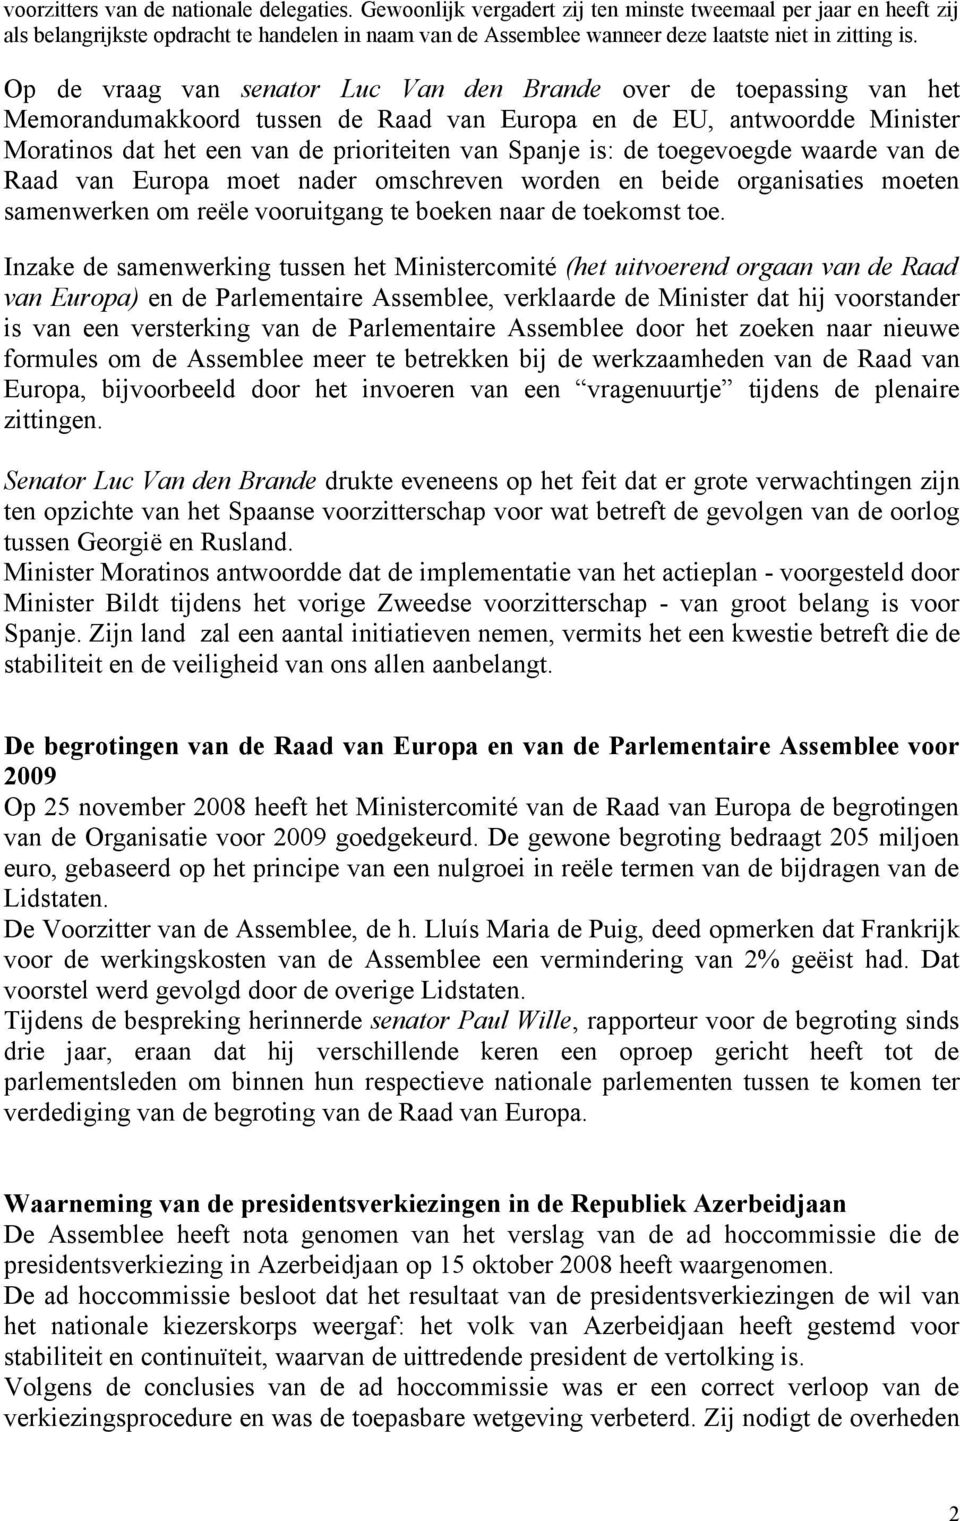 Op de vraag van senator Luc Van den Brande over de toepassing van het Memorandumakkoord tussen de Raad van Europa en de EU, antwoordde Minister Moratinos dat het een van de prioriteiten van Spanje